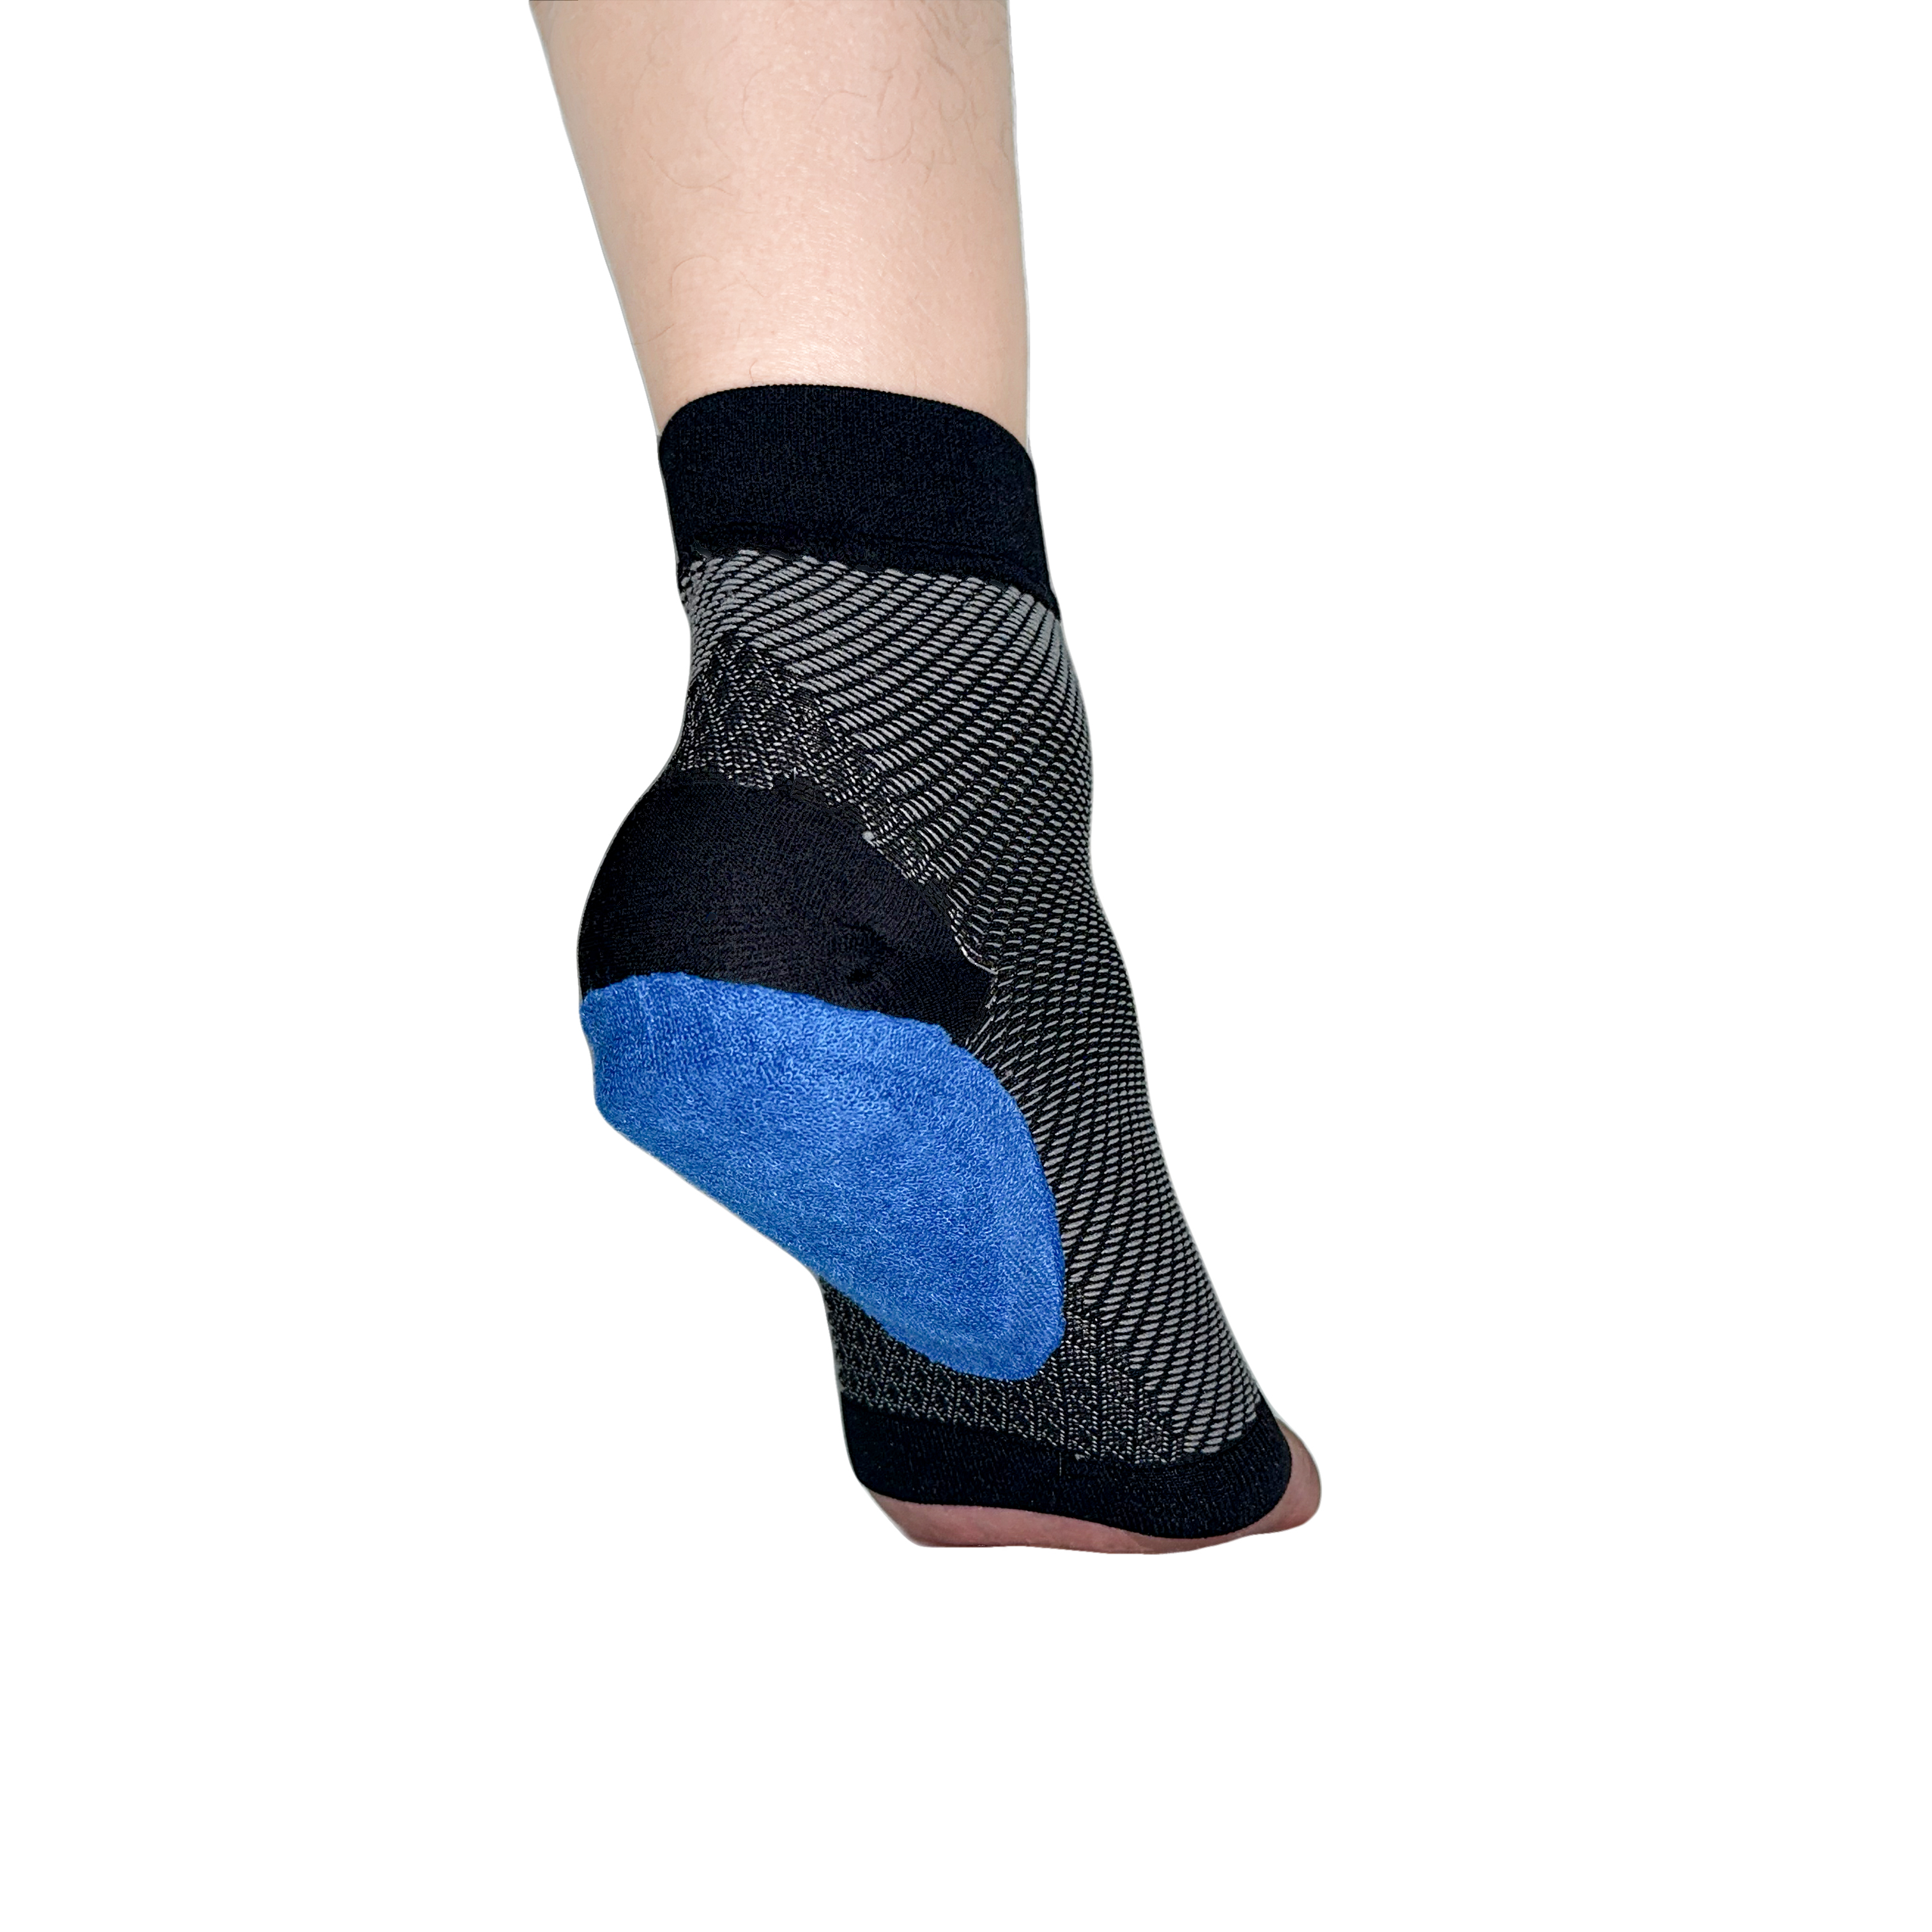 Gel heel pad support Plantar Fasciitis Ankle Sleeve with heel pads (1)